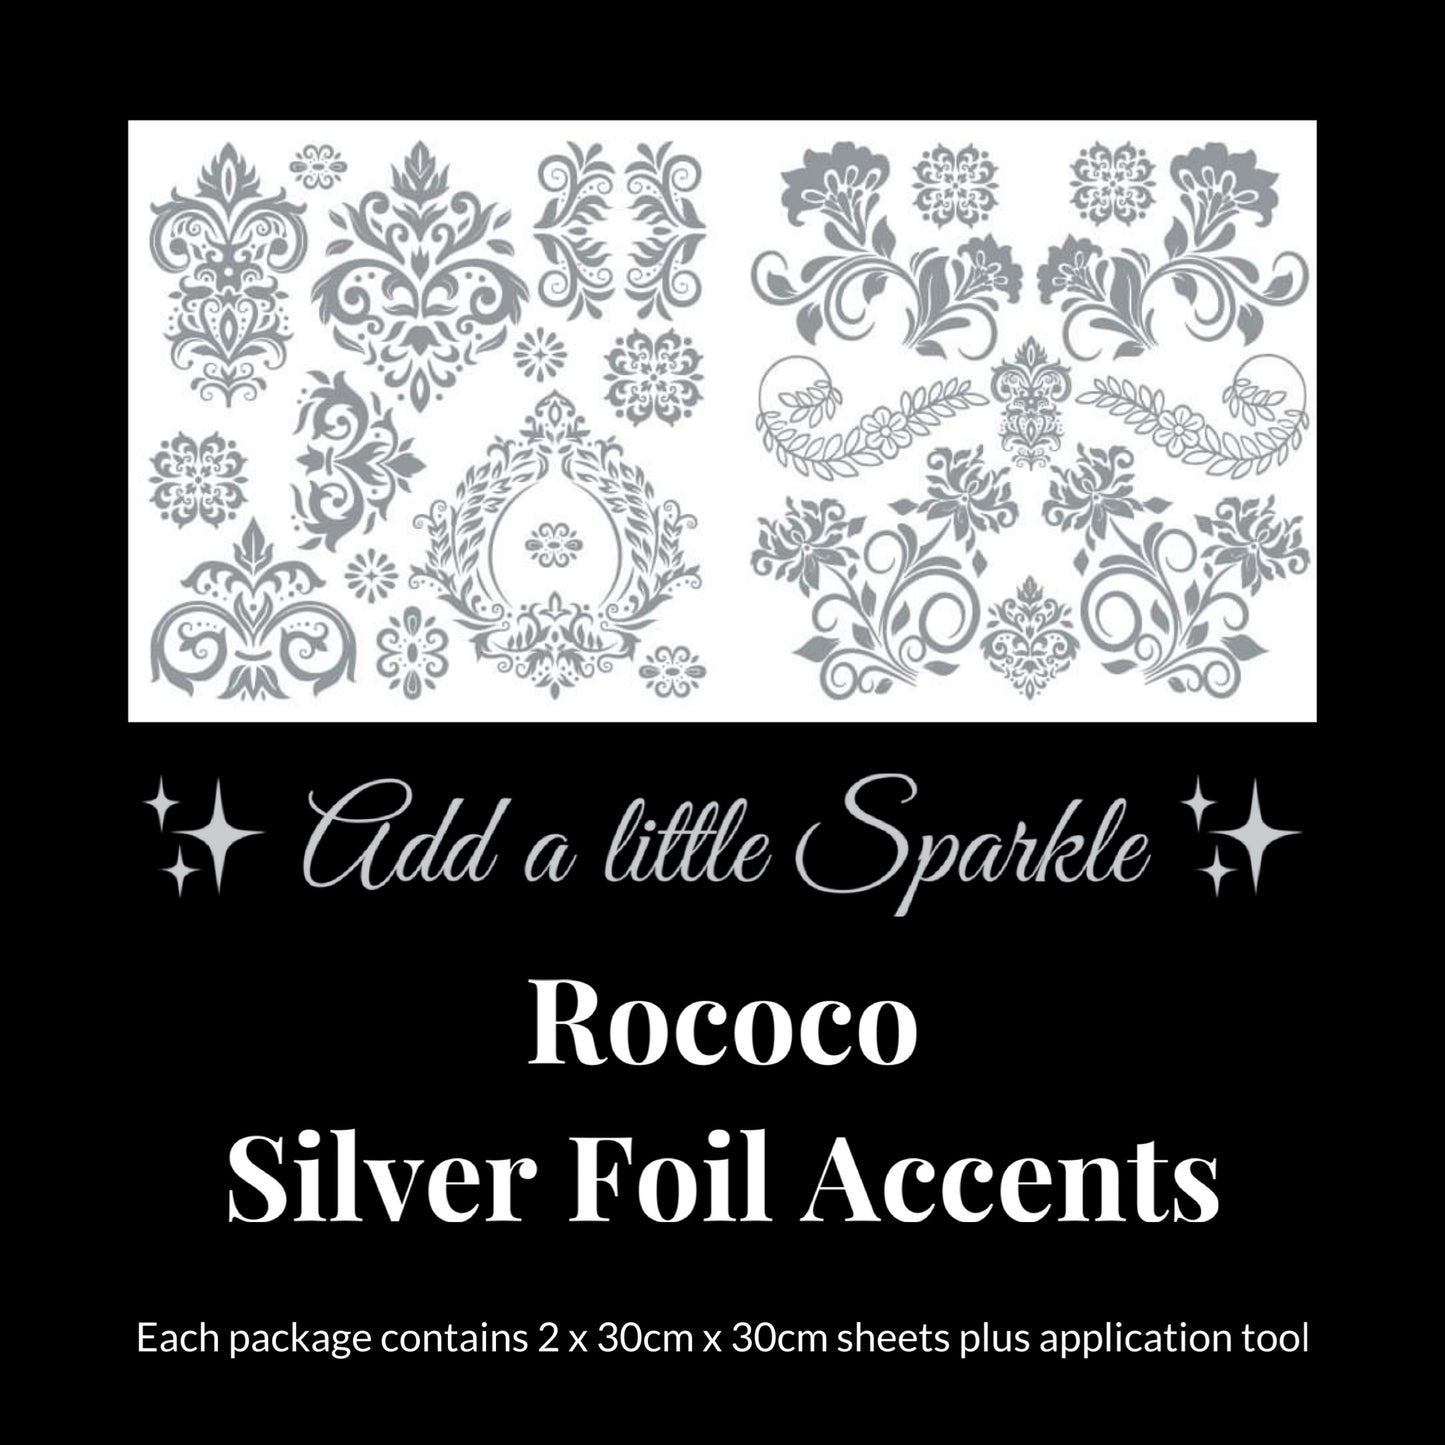 Rococo Silver Foil Accents